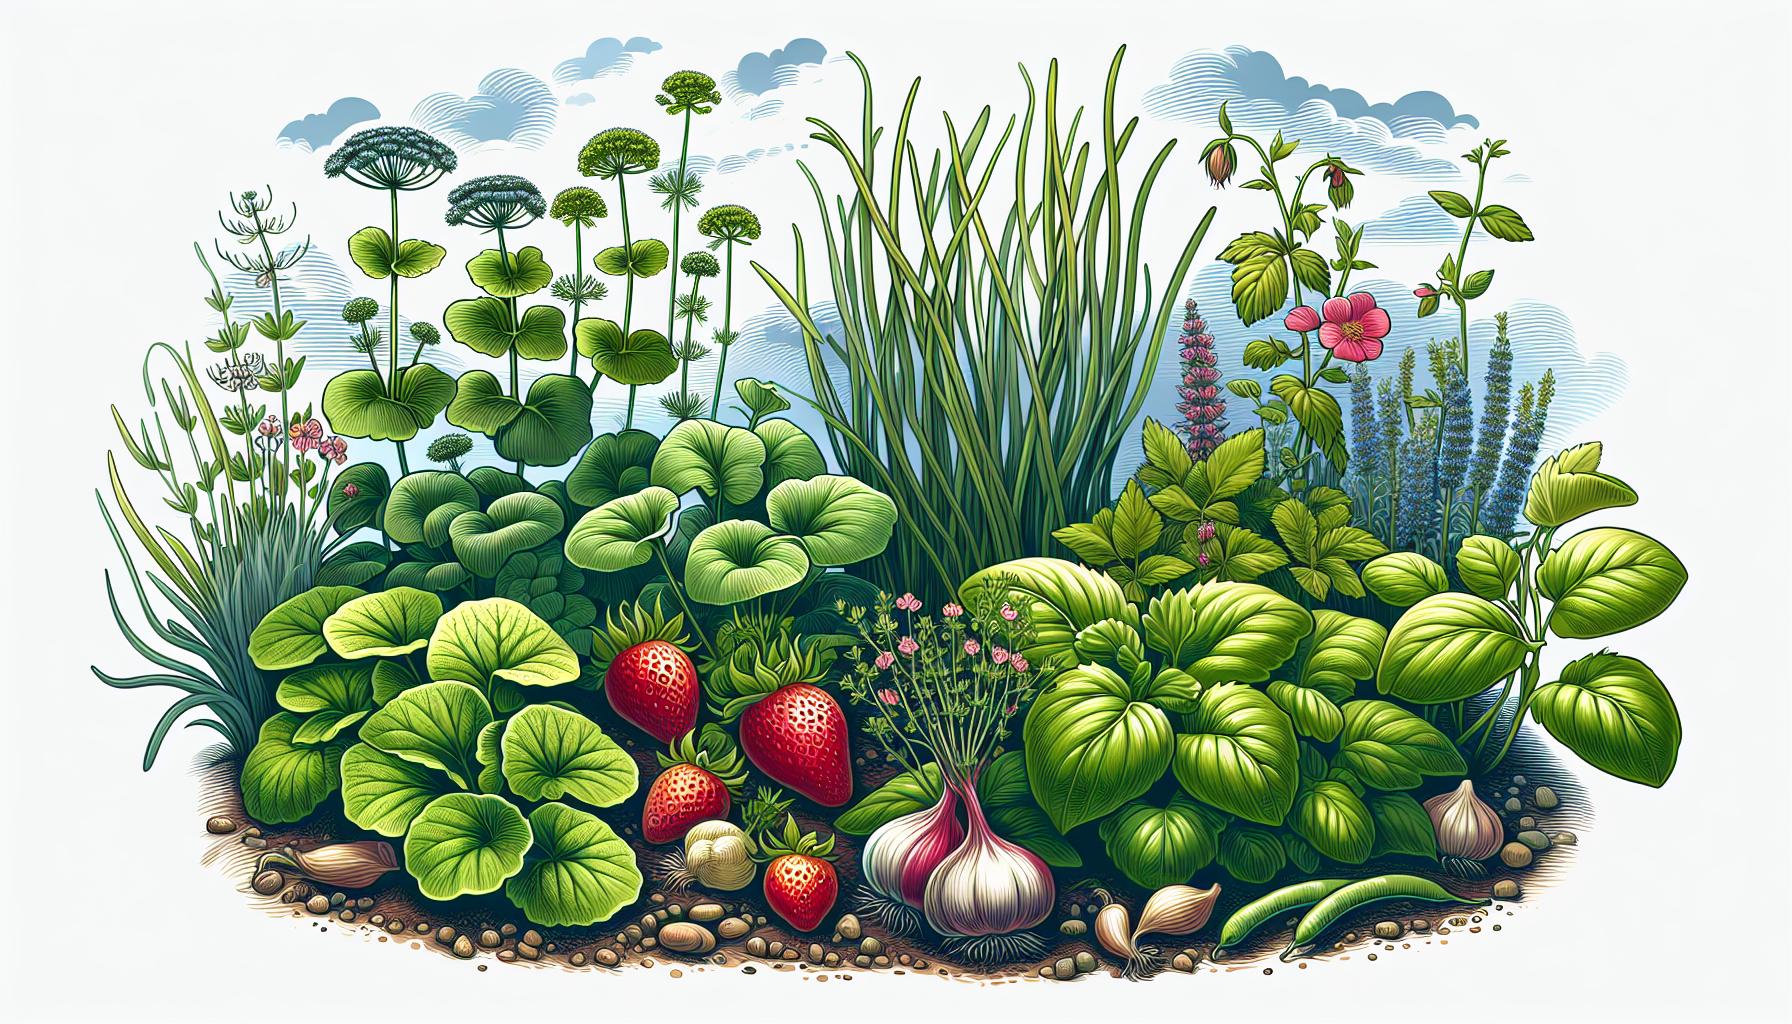 lush vegetable garden illustration